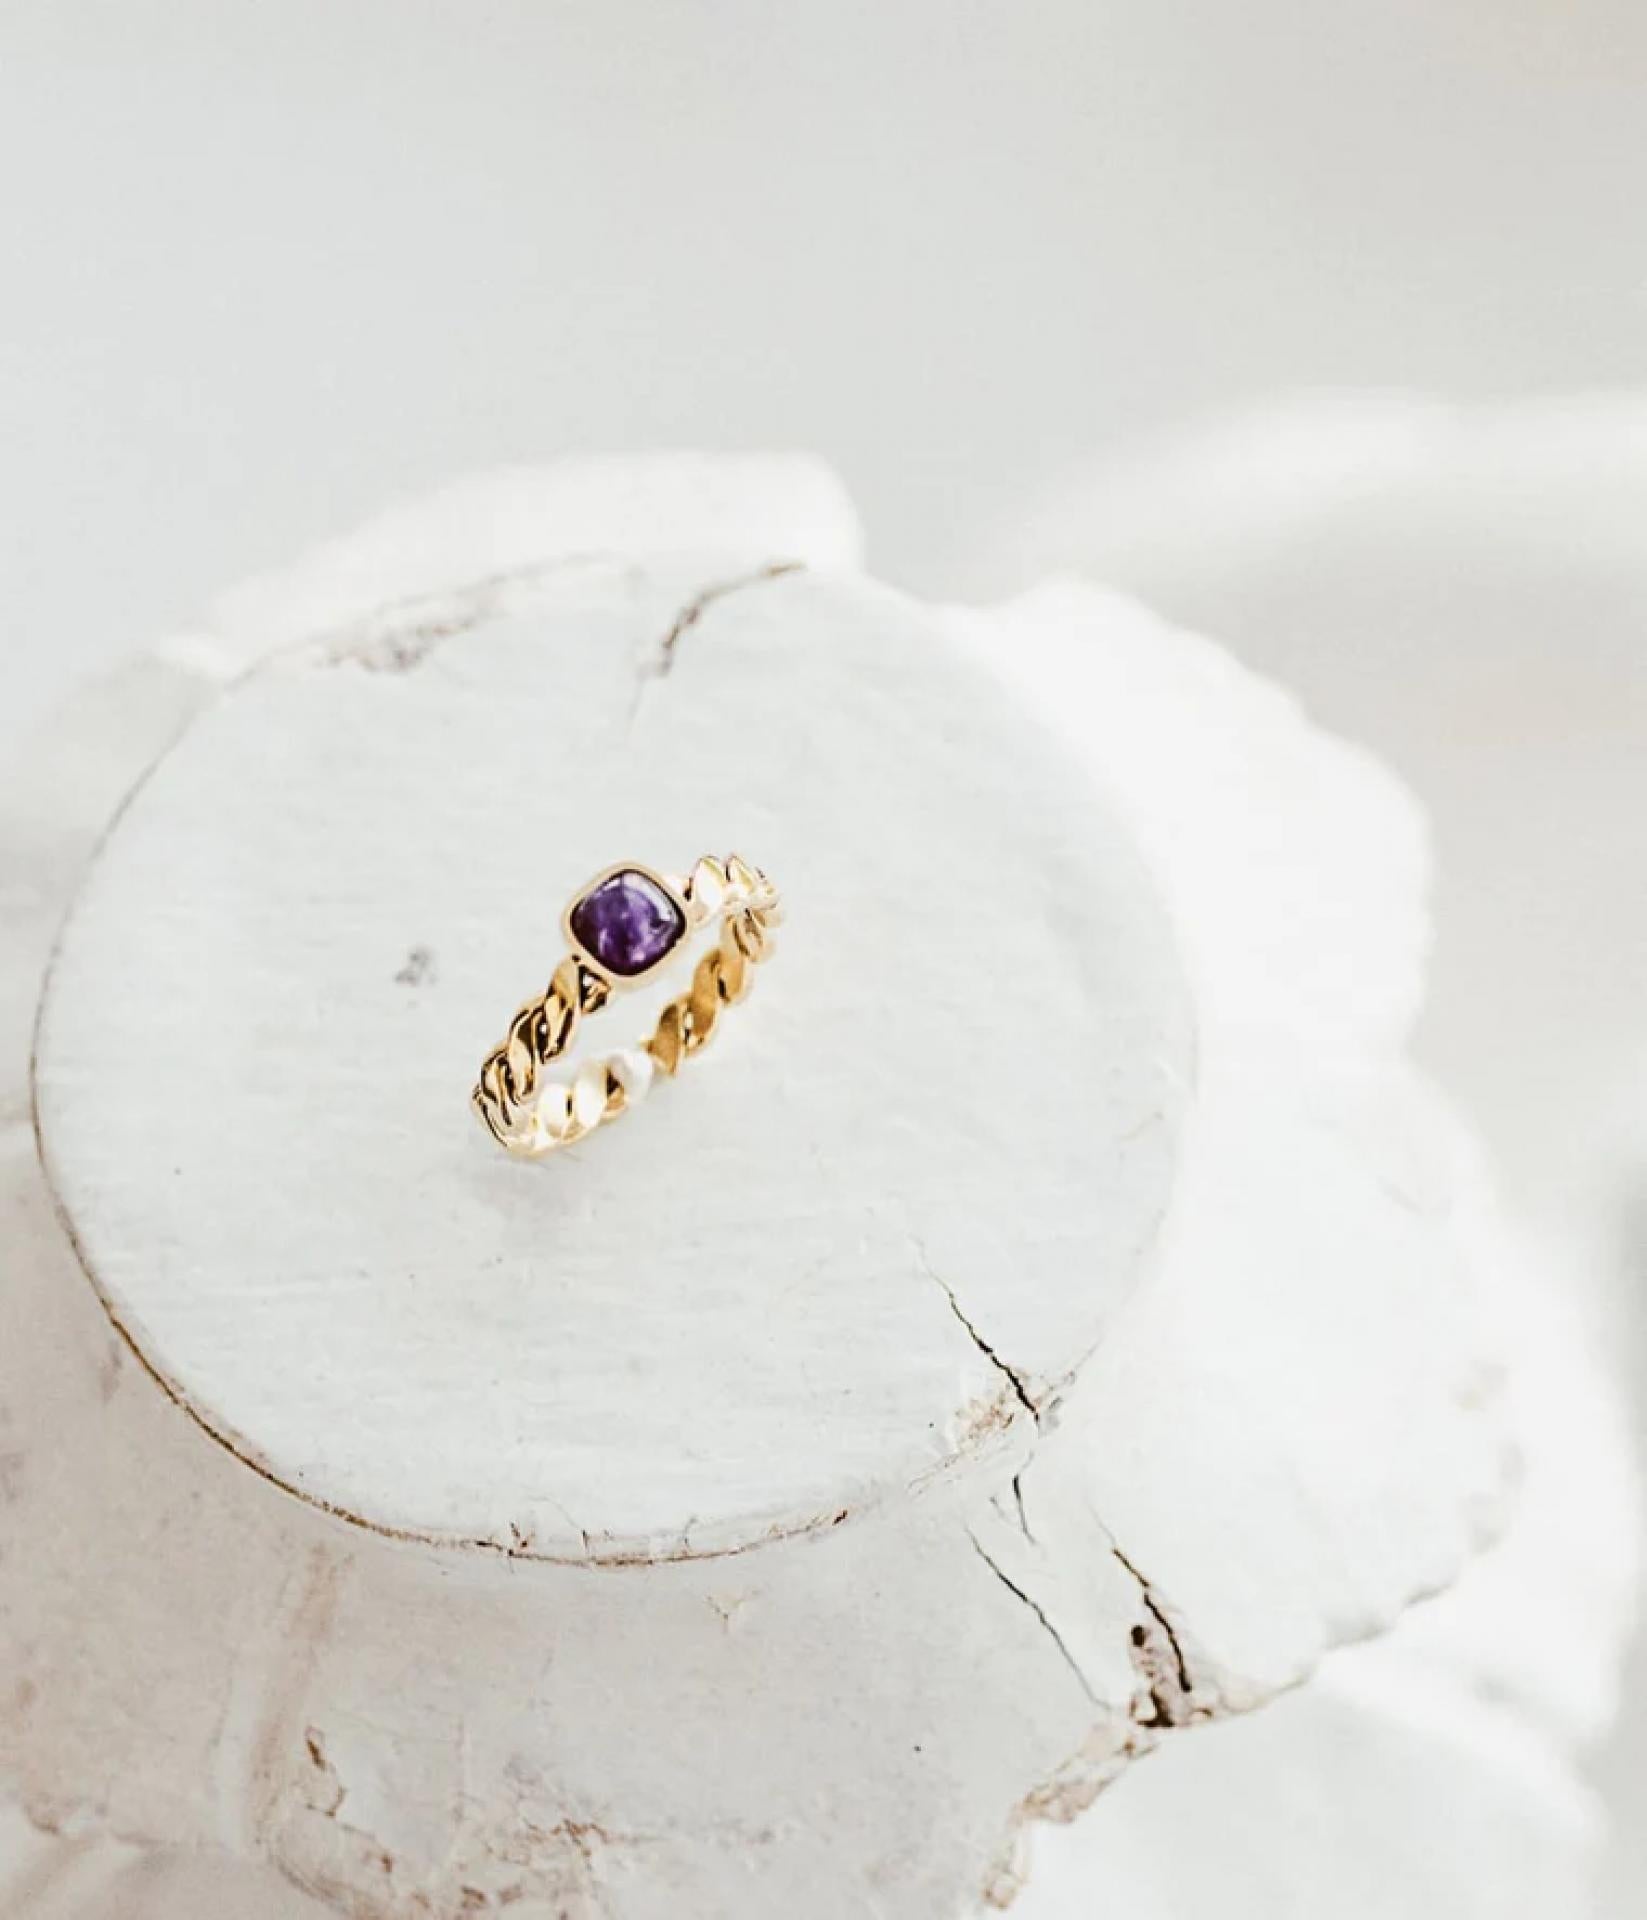 Zag Bijoux geflochtener Ring Gold mit Purpur farbenden Amethyst Stein 6mm